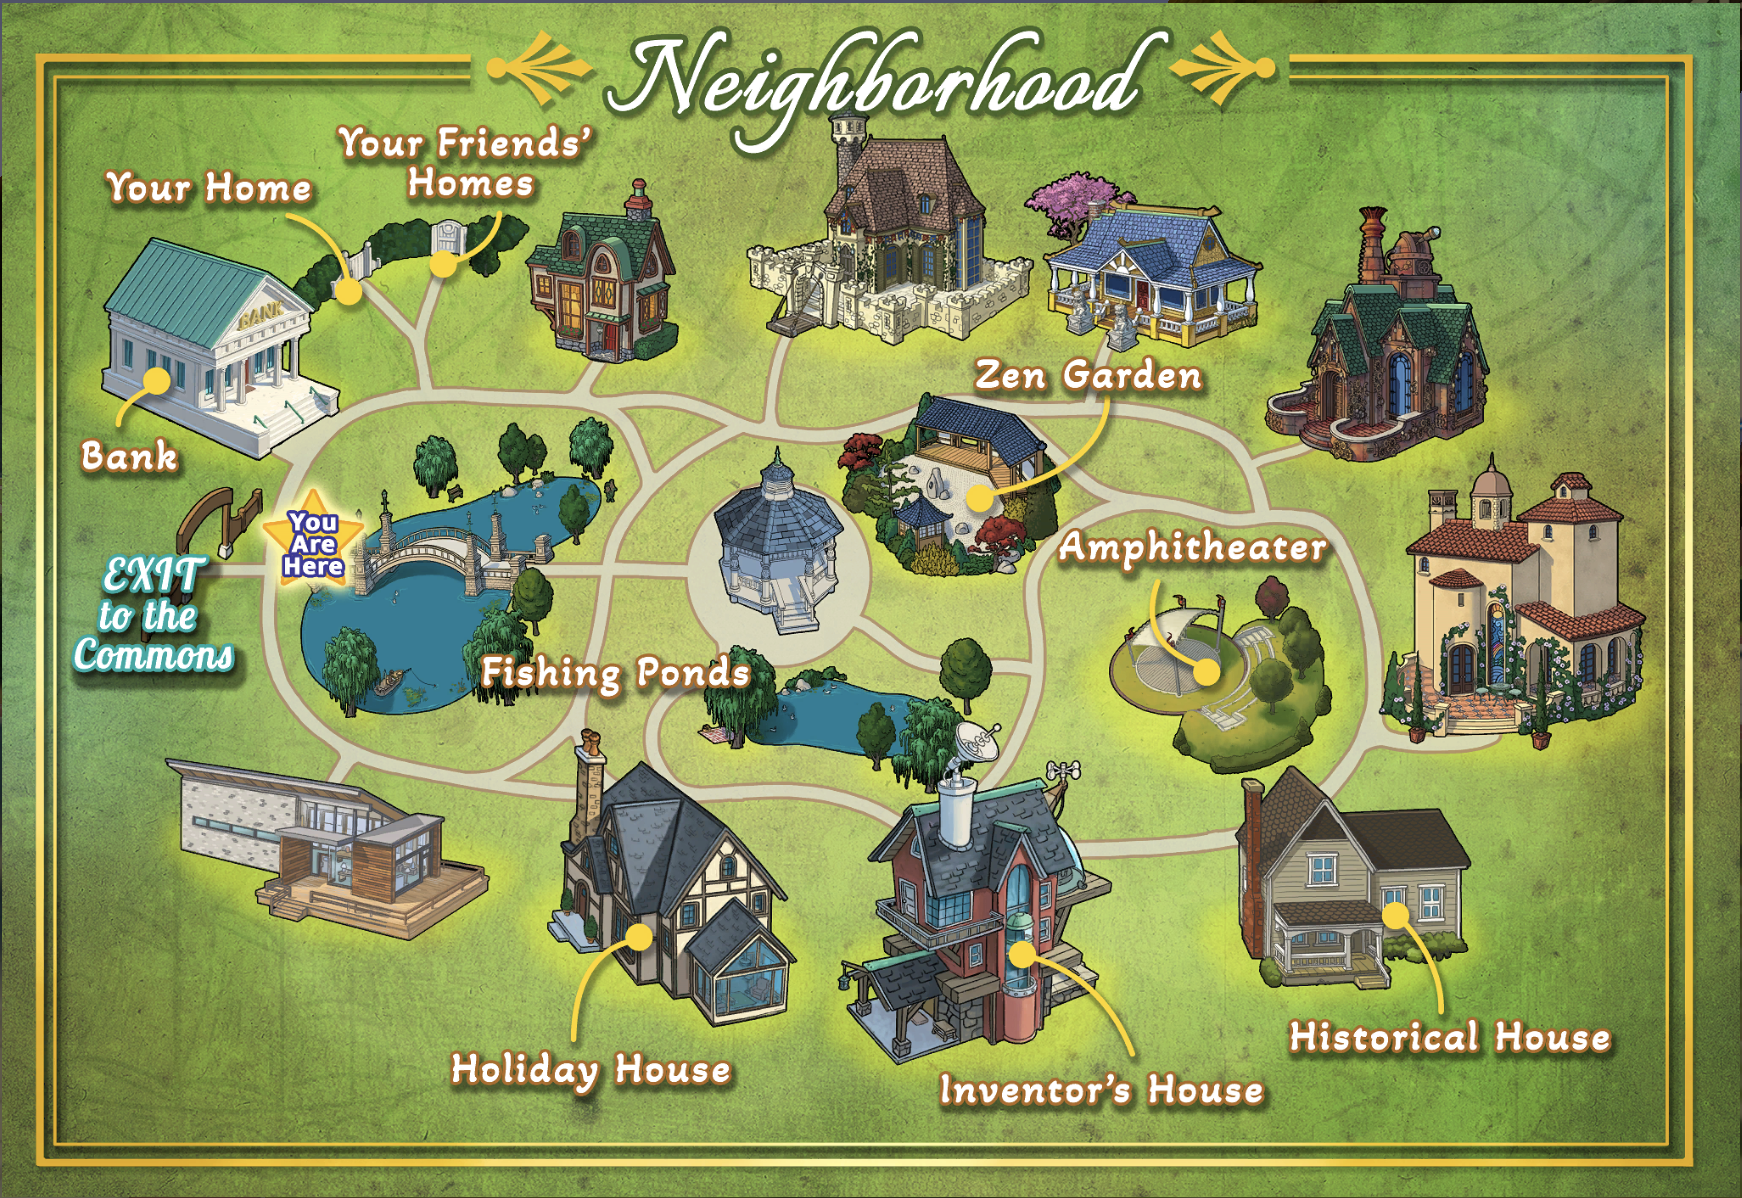 Neighborhood_Map.png